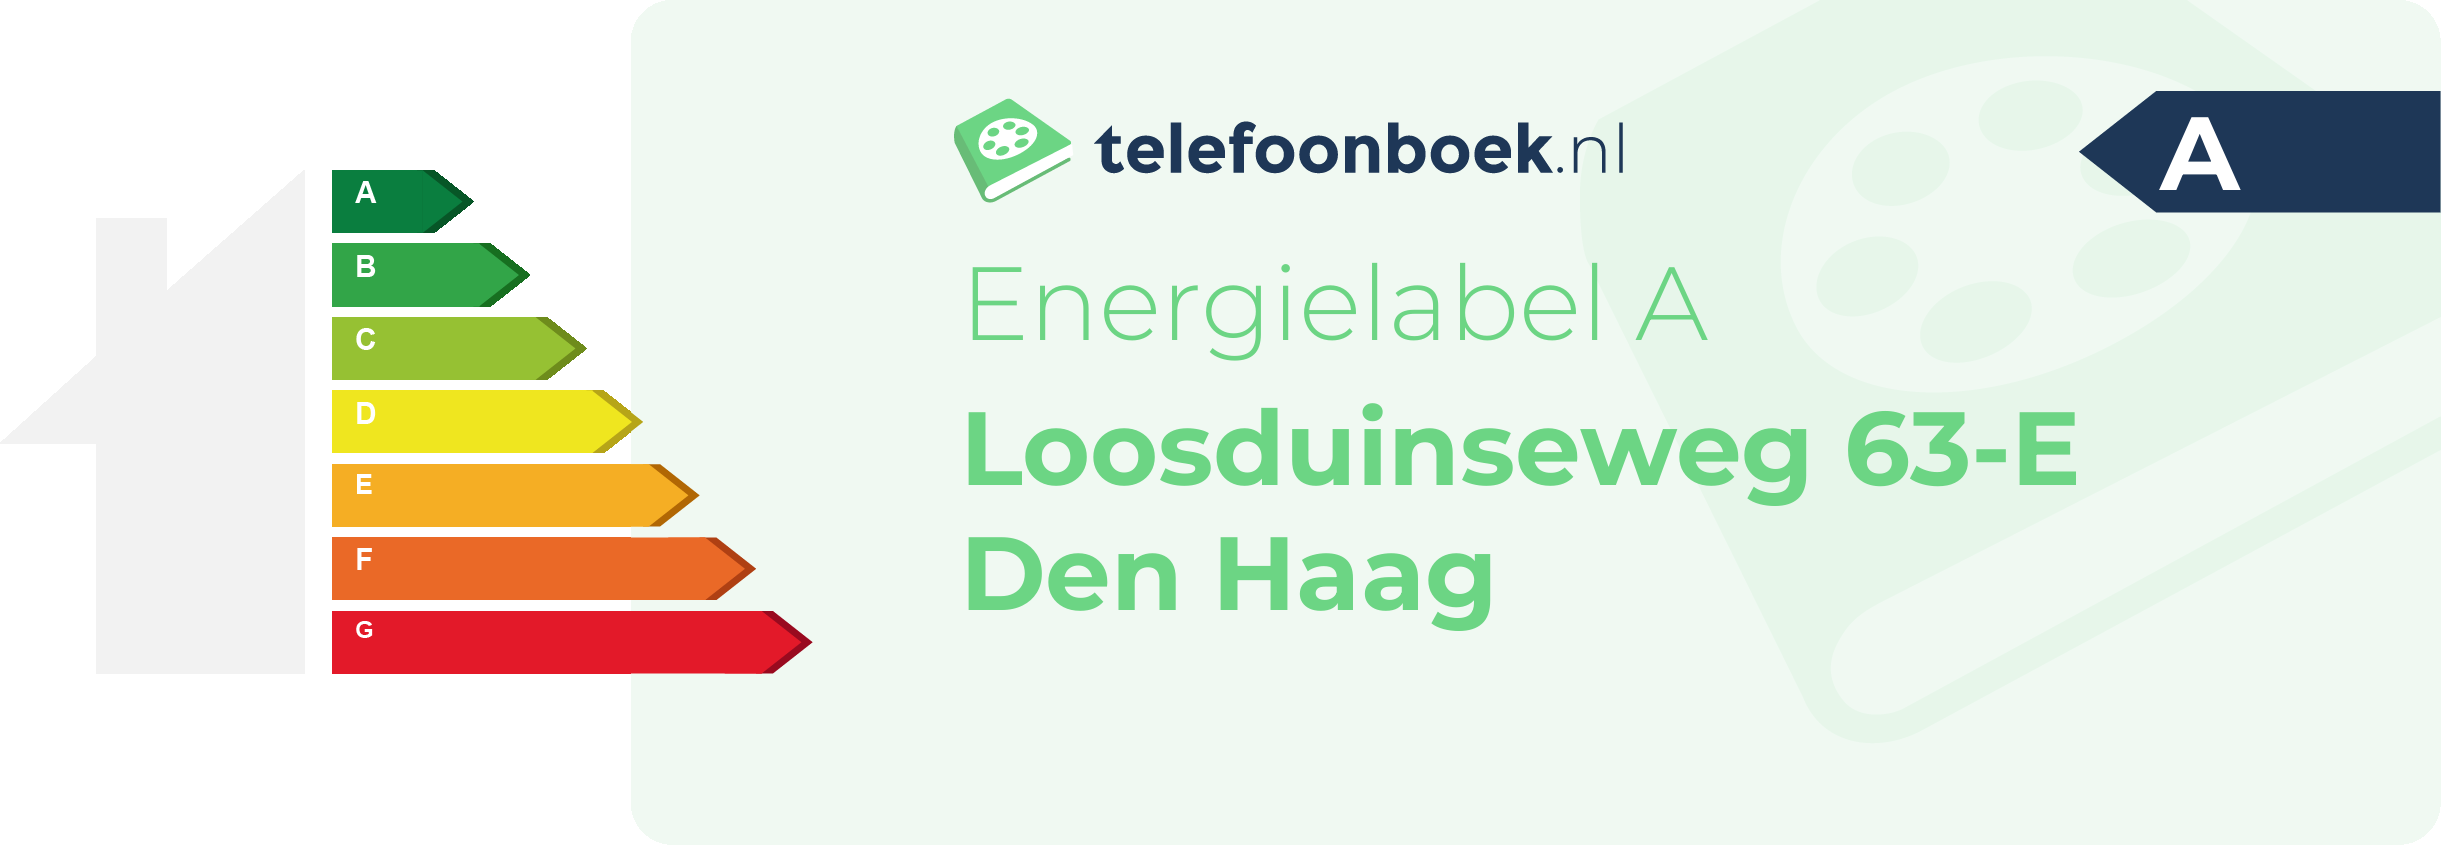 Energielabel Loosduinseweg 63-E Den Haag